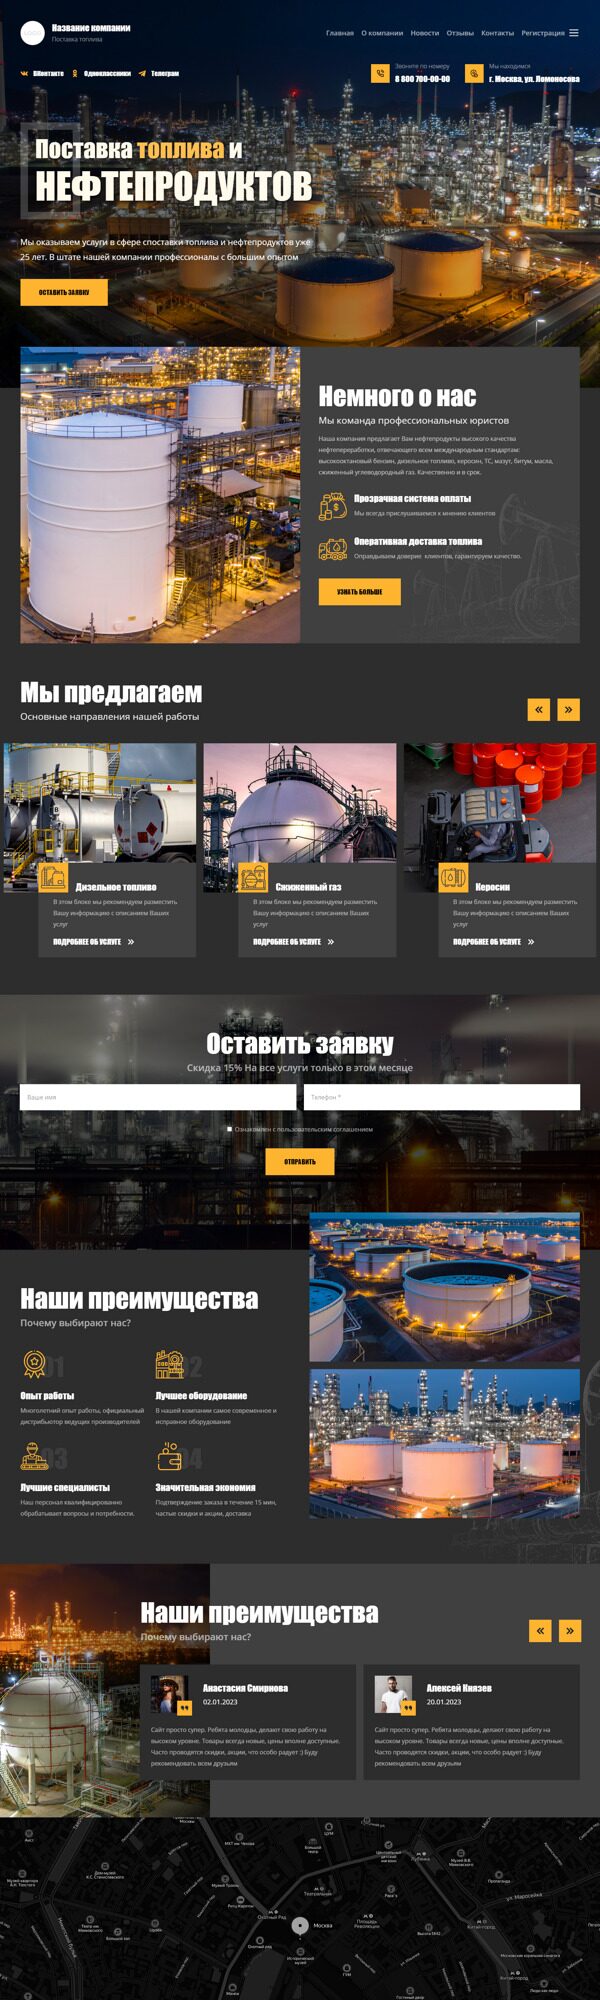 Готовый Сайт-Бизнес № 4677422 - Нефтепродукты, топливо, бензин (Десктопная версия)